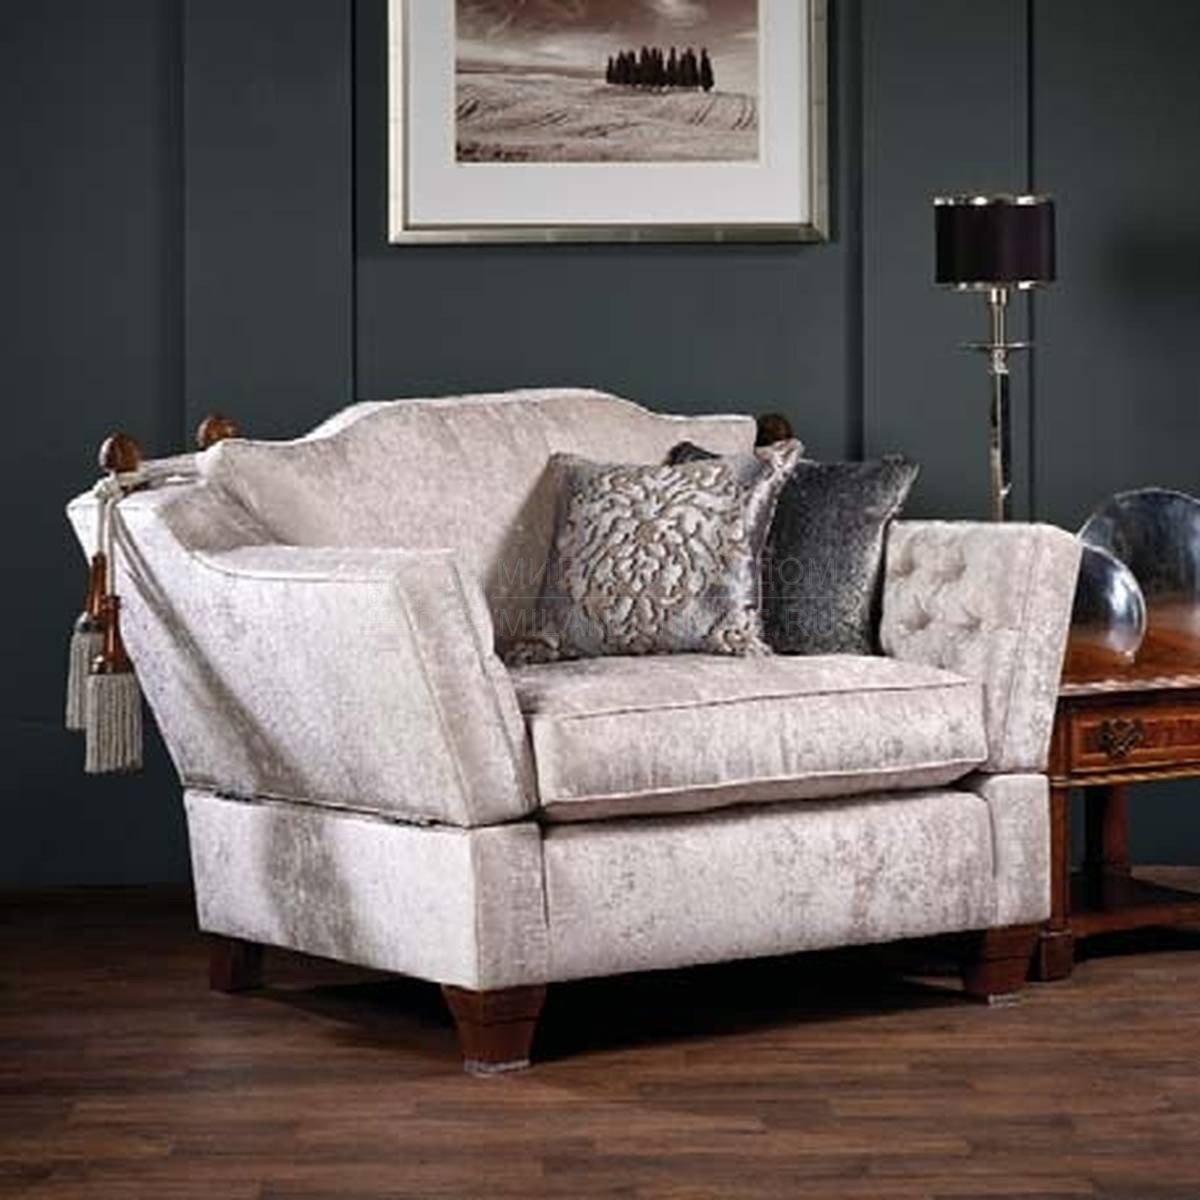 Кресло Dorchester /snug-chair из Великобритании фабрики DAVID GUNDRY